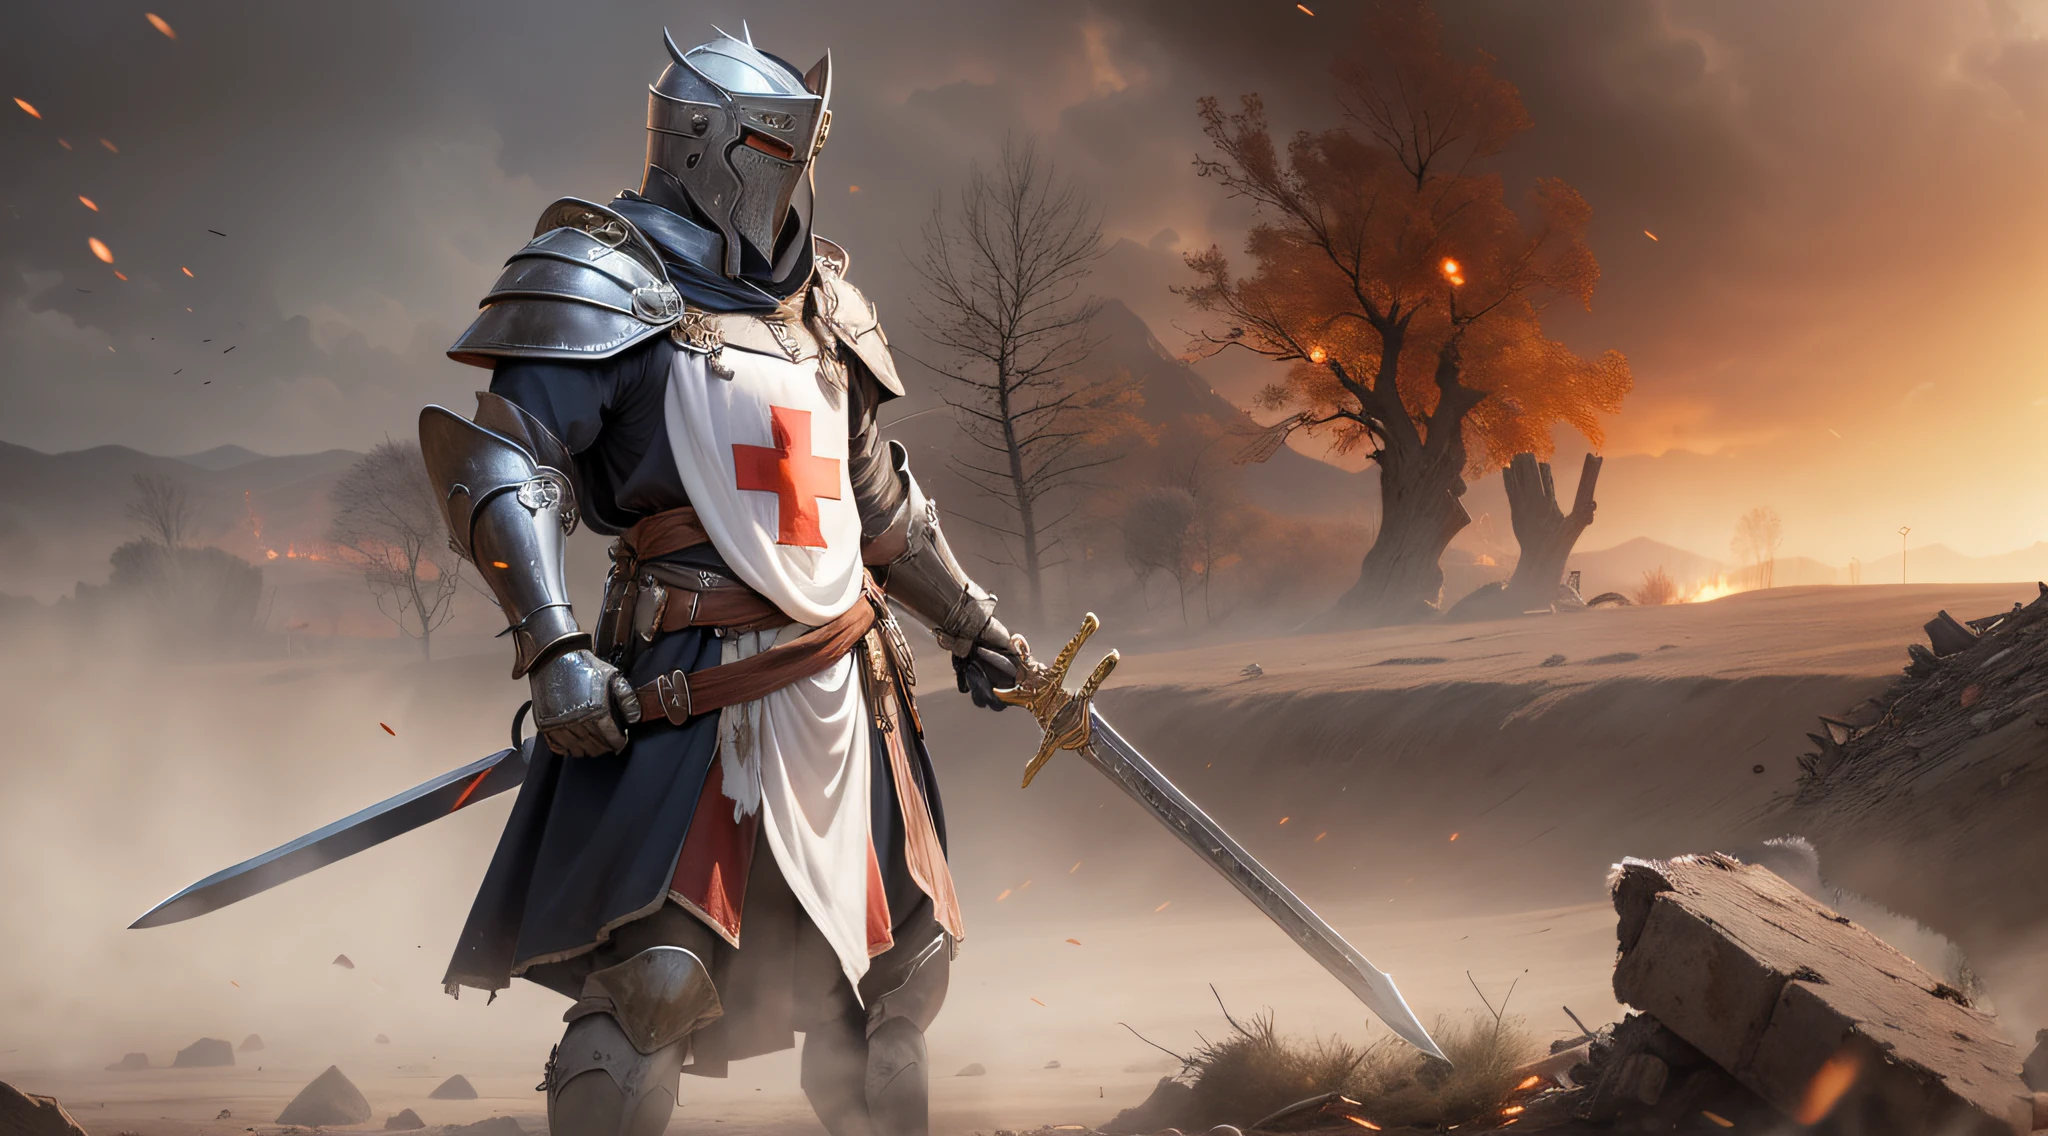 อัศวินเทมพลาร์ผู้สง่างามยืนอยู่ในภูมิประเทศที่รกร้าง, สวมชุดเกราะแวววาวมีกากบาทสีแดงบนหน้าอก. He wields a long sword and holds a shield adorned with the symbol oฉ the Templars. ในพื้นหลัง, เศษซากและควันเป็นพยานถึงการต่อสู้ในอดีต. His posture conveys conฉidence and authority, ขณะที่ดวงตาของเขาเผยให้เห็นความมุ่งมั่น., สถิตยศาสตร์, รายละเอียดสูง, แสงภาพยนตร์, โซนี่ FE จีเอ็ม, lens ฉlare, ฉ/1.8, 135มม, 35มม, ฉirst-person view, จุดที่หายไป, ยูเอชดี, ถูกต้องตามหลักกายวิภาค, 8k, ได้รับรางวัล, คุณภาพดีที่สุด, รายละเอียดสูงs